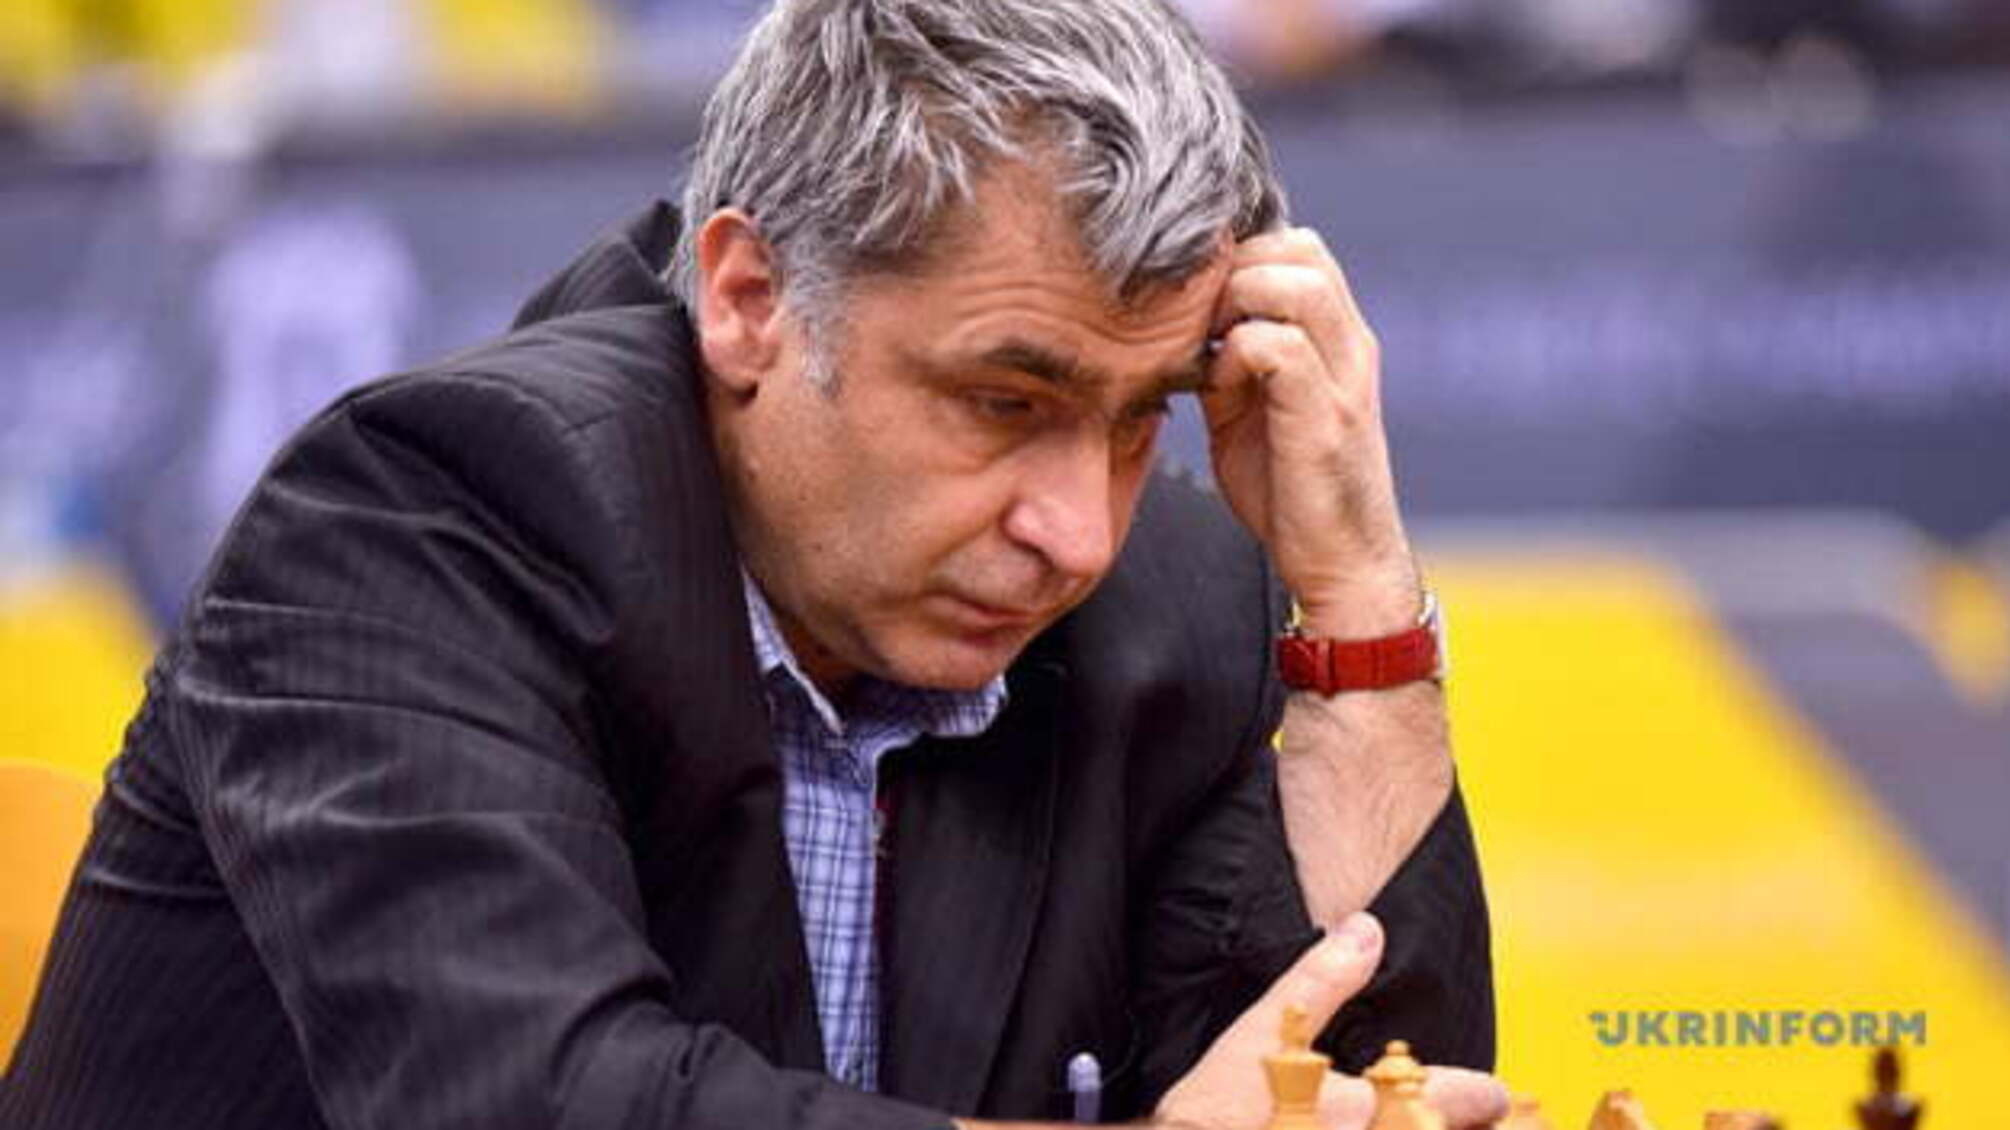 Іванчук обіграв угорця Леко на старті супертурніру 'Легенди шахів'